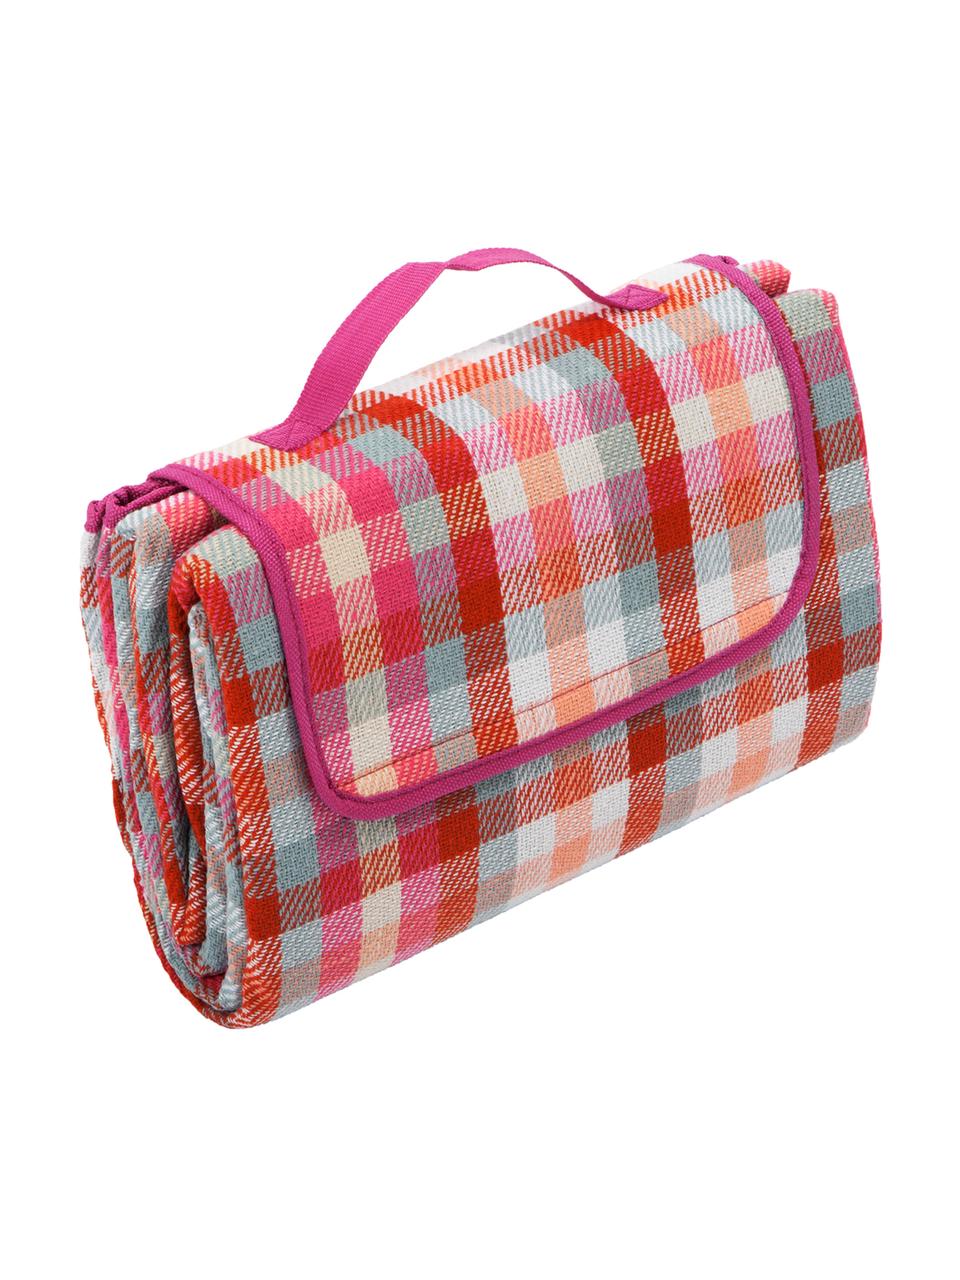 Picknick-Decke Clear, Vorderseite: Kunstfaser, Rückseite: Kunststoff, Rot, Weiß, Pink, Mint, Pfirsichfarben, 130 x 170 cm